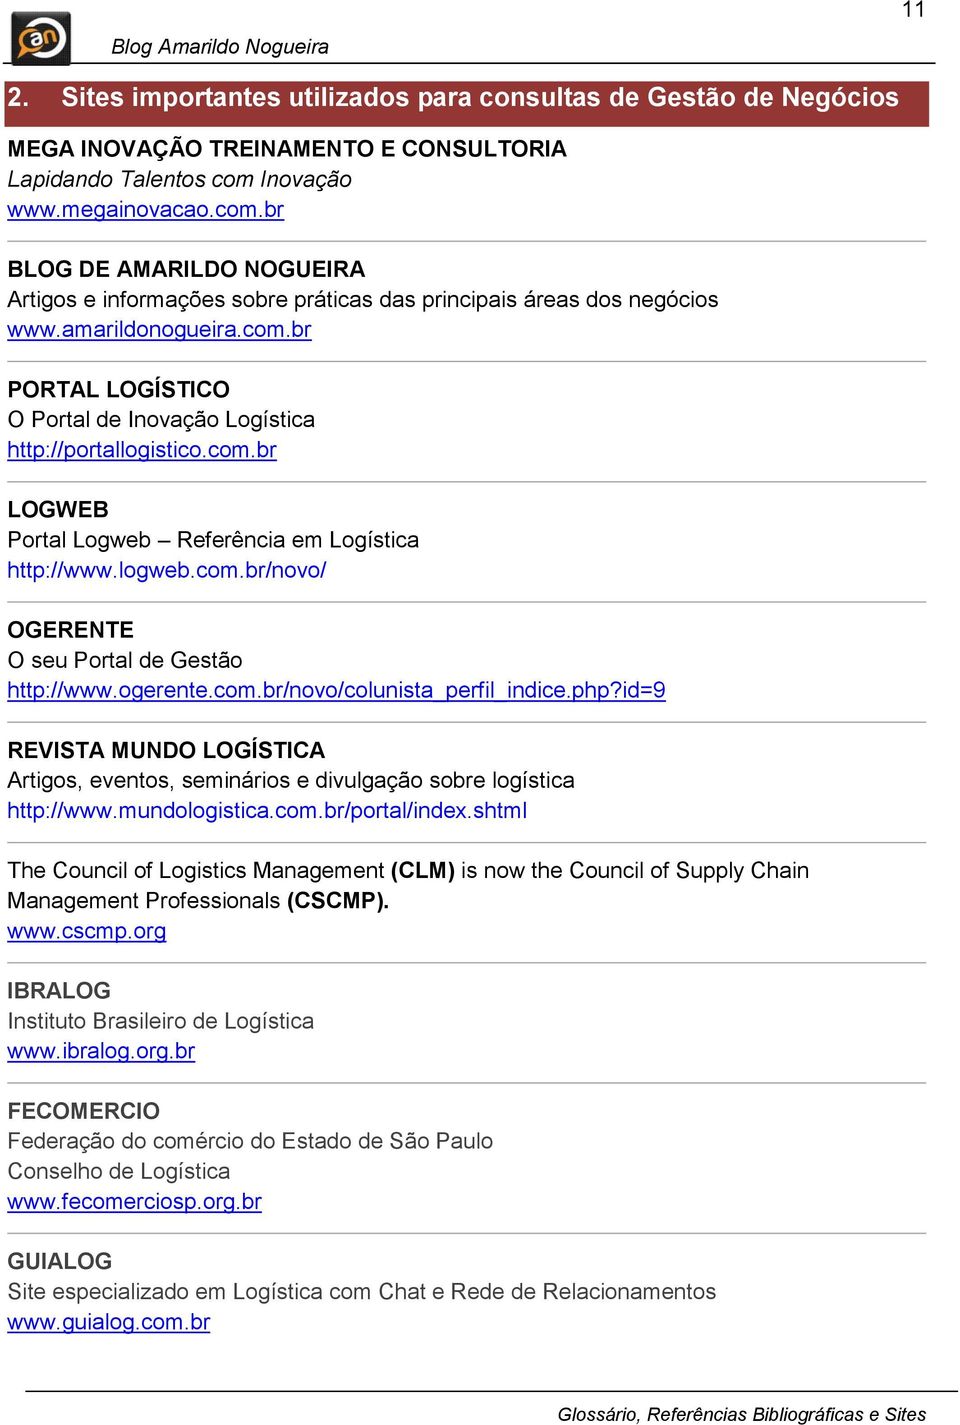 com.br LOGWEB Portal Logweb Referência em Logística http://www.logweb.com.br/novo/ OGERENTE O seu Portal de Gestão http://www.ogerente.com.br/novo/colunista_perfil_indice.php?